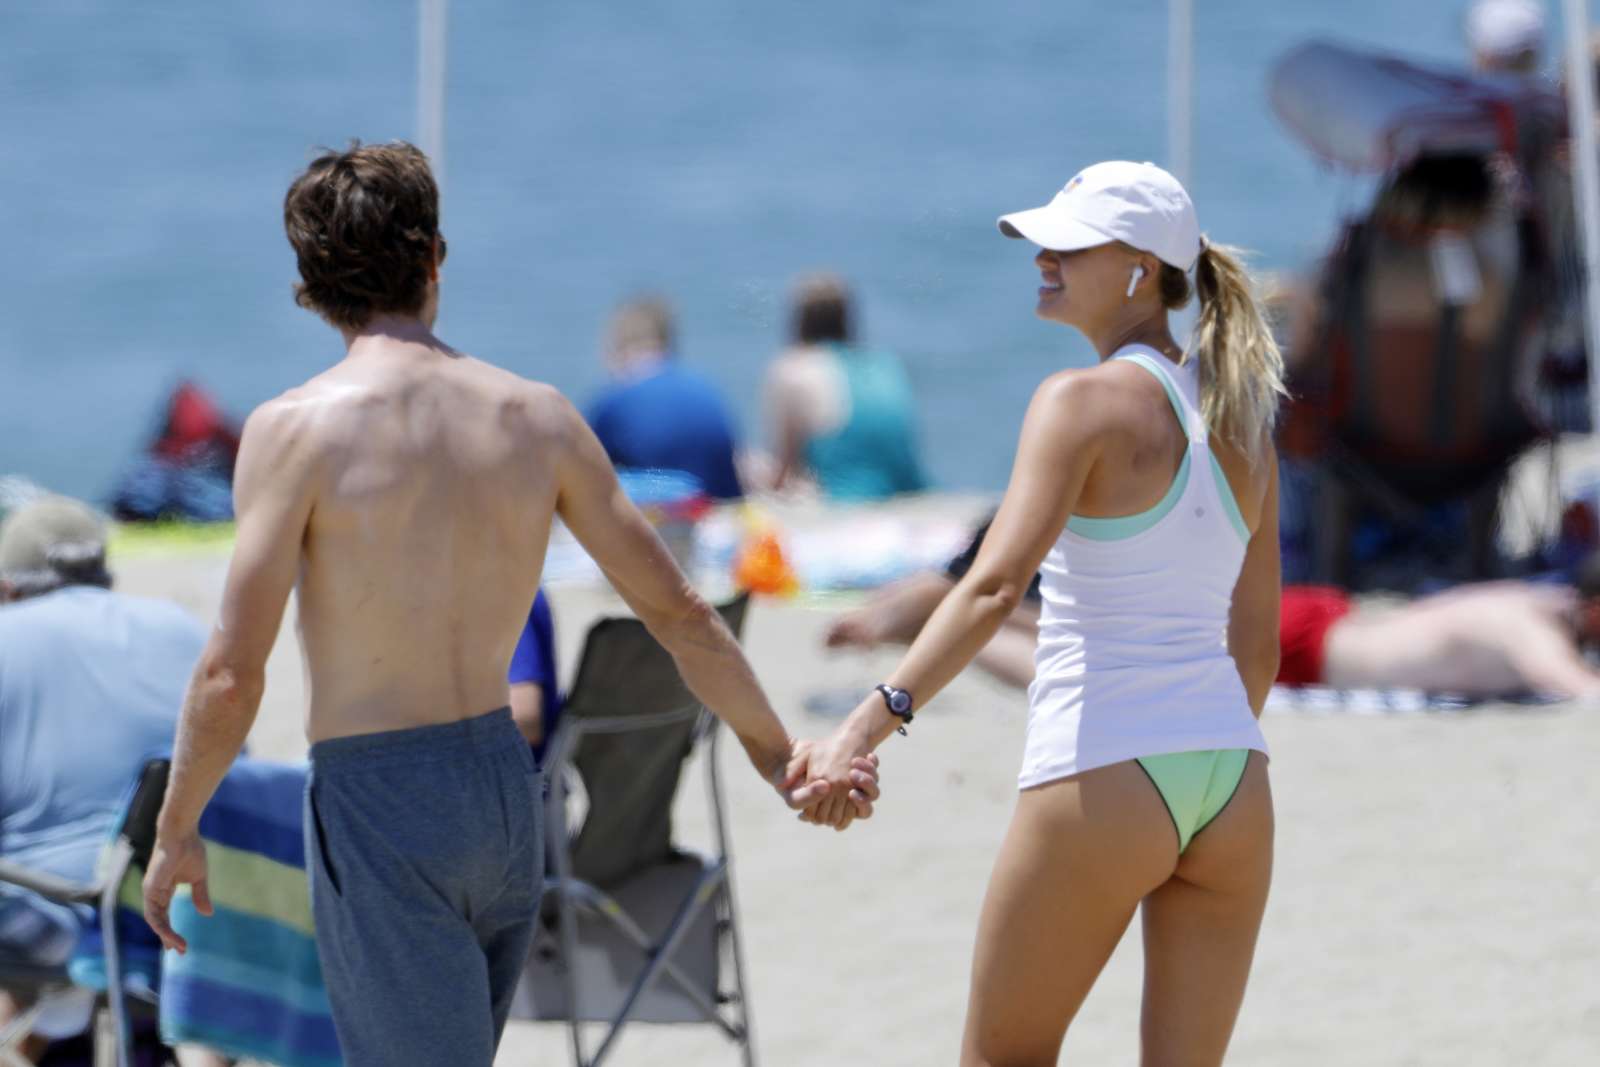 Kelly Rohrbach in Bikini on the beach in Malibu